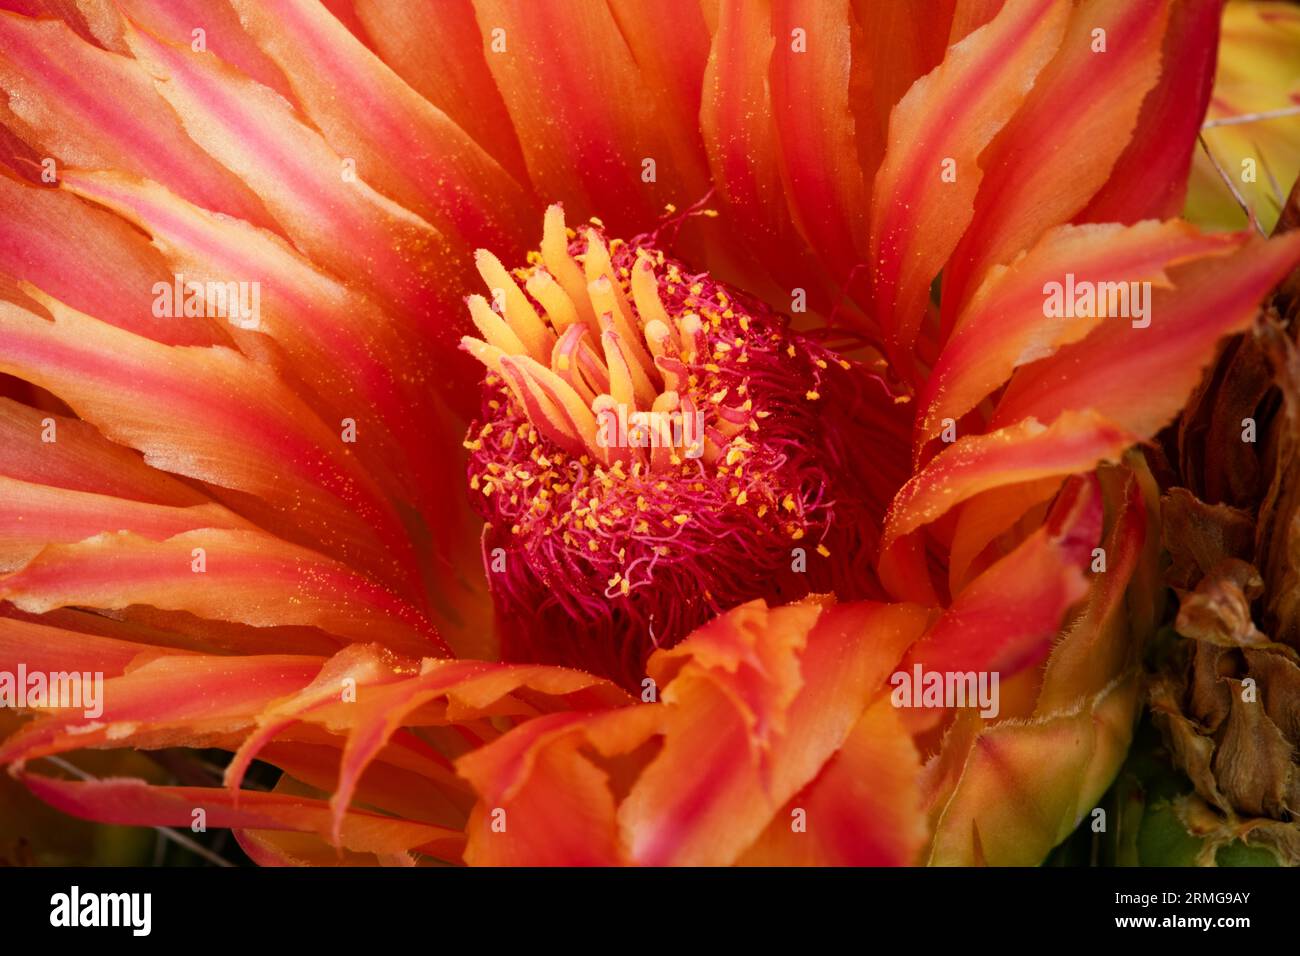 Primo piano dell'interno del fiore d'arancio di cactus a botte che mostra filamenti, stigma, shamens, petali e polline in Arizona ad agosto Foto Stock